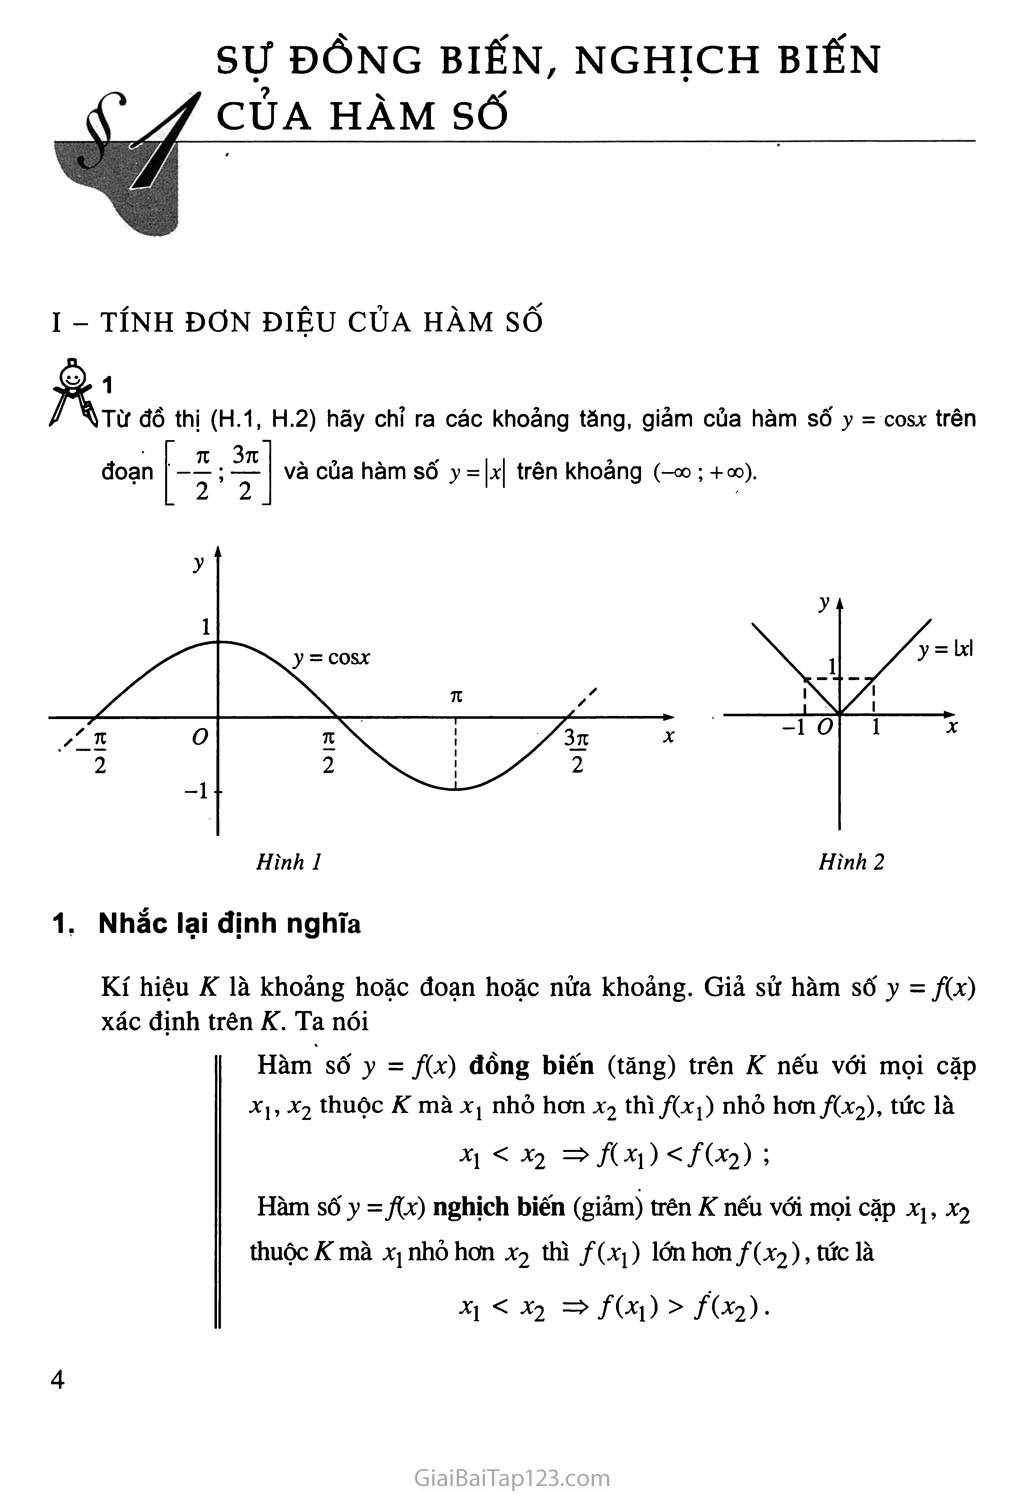 Bài 1. Sự đồng biến, nghịch biến của hàm số - Bài đọc thêm: Tính chất đơn điệu của hàm số - Bạn có biết: La - garăng (J. L. Lagrange) trang 2